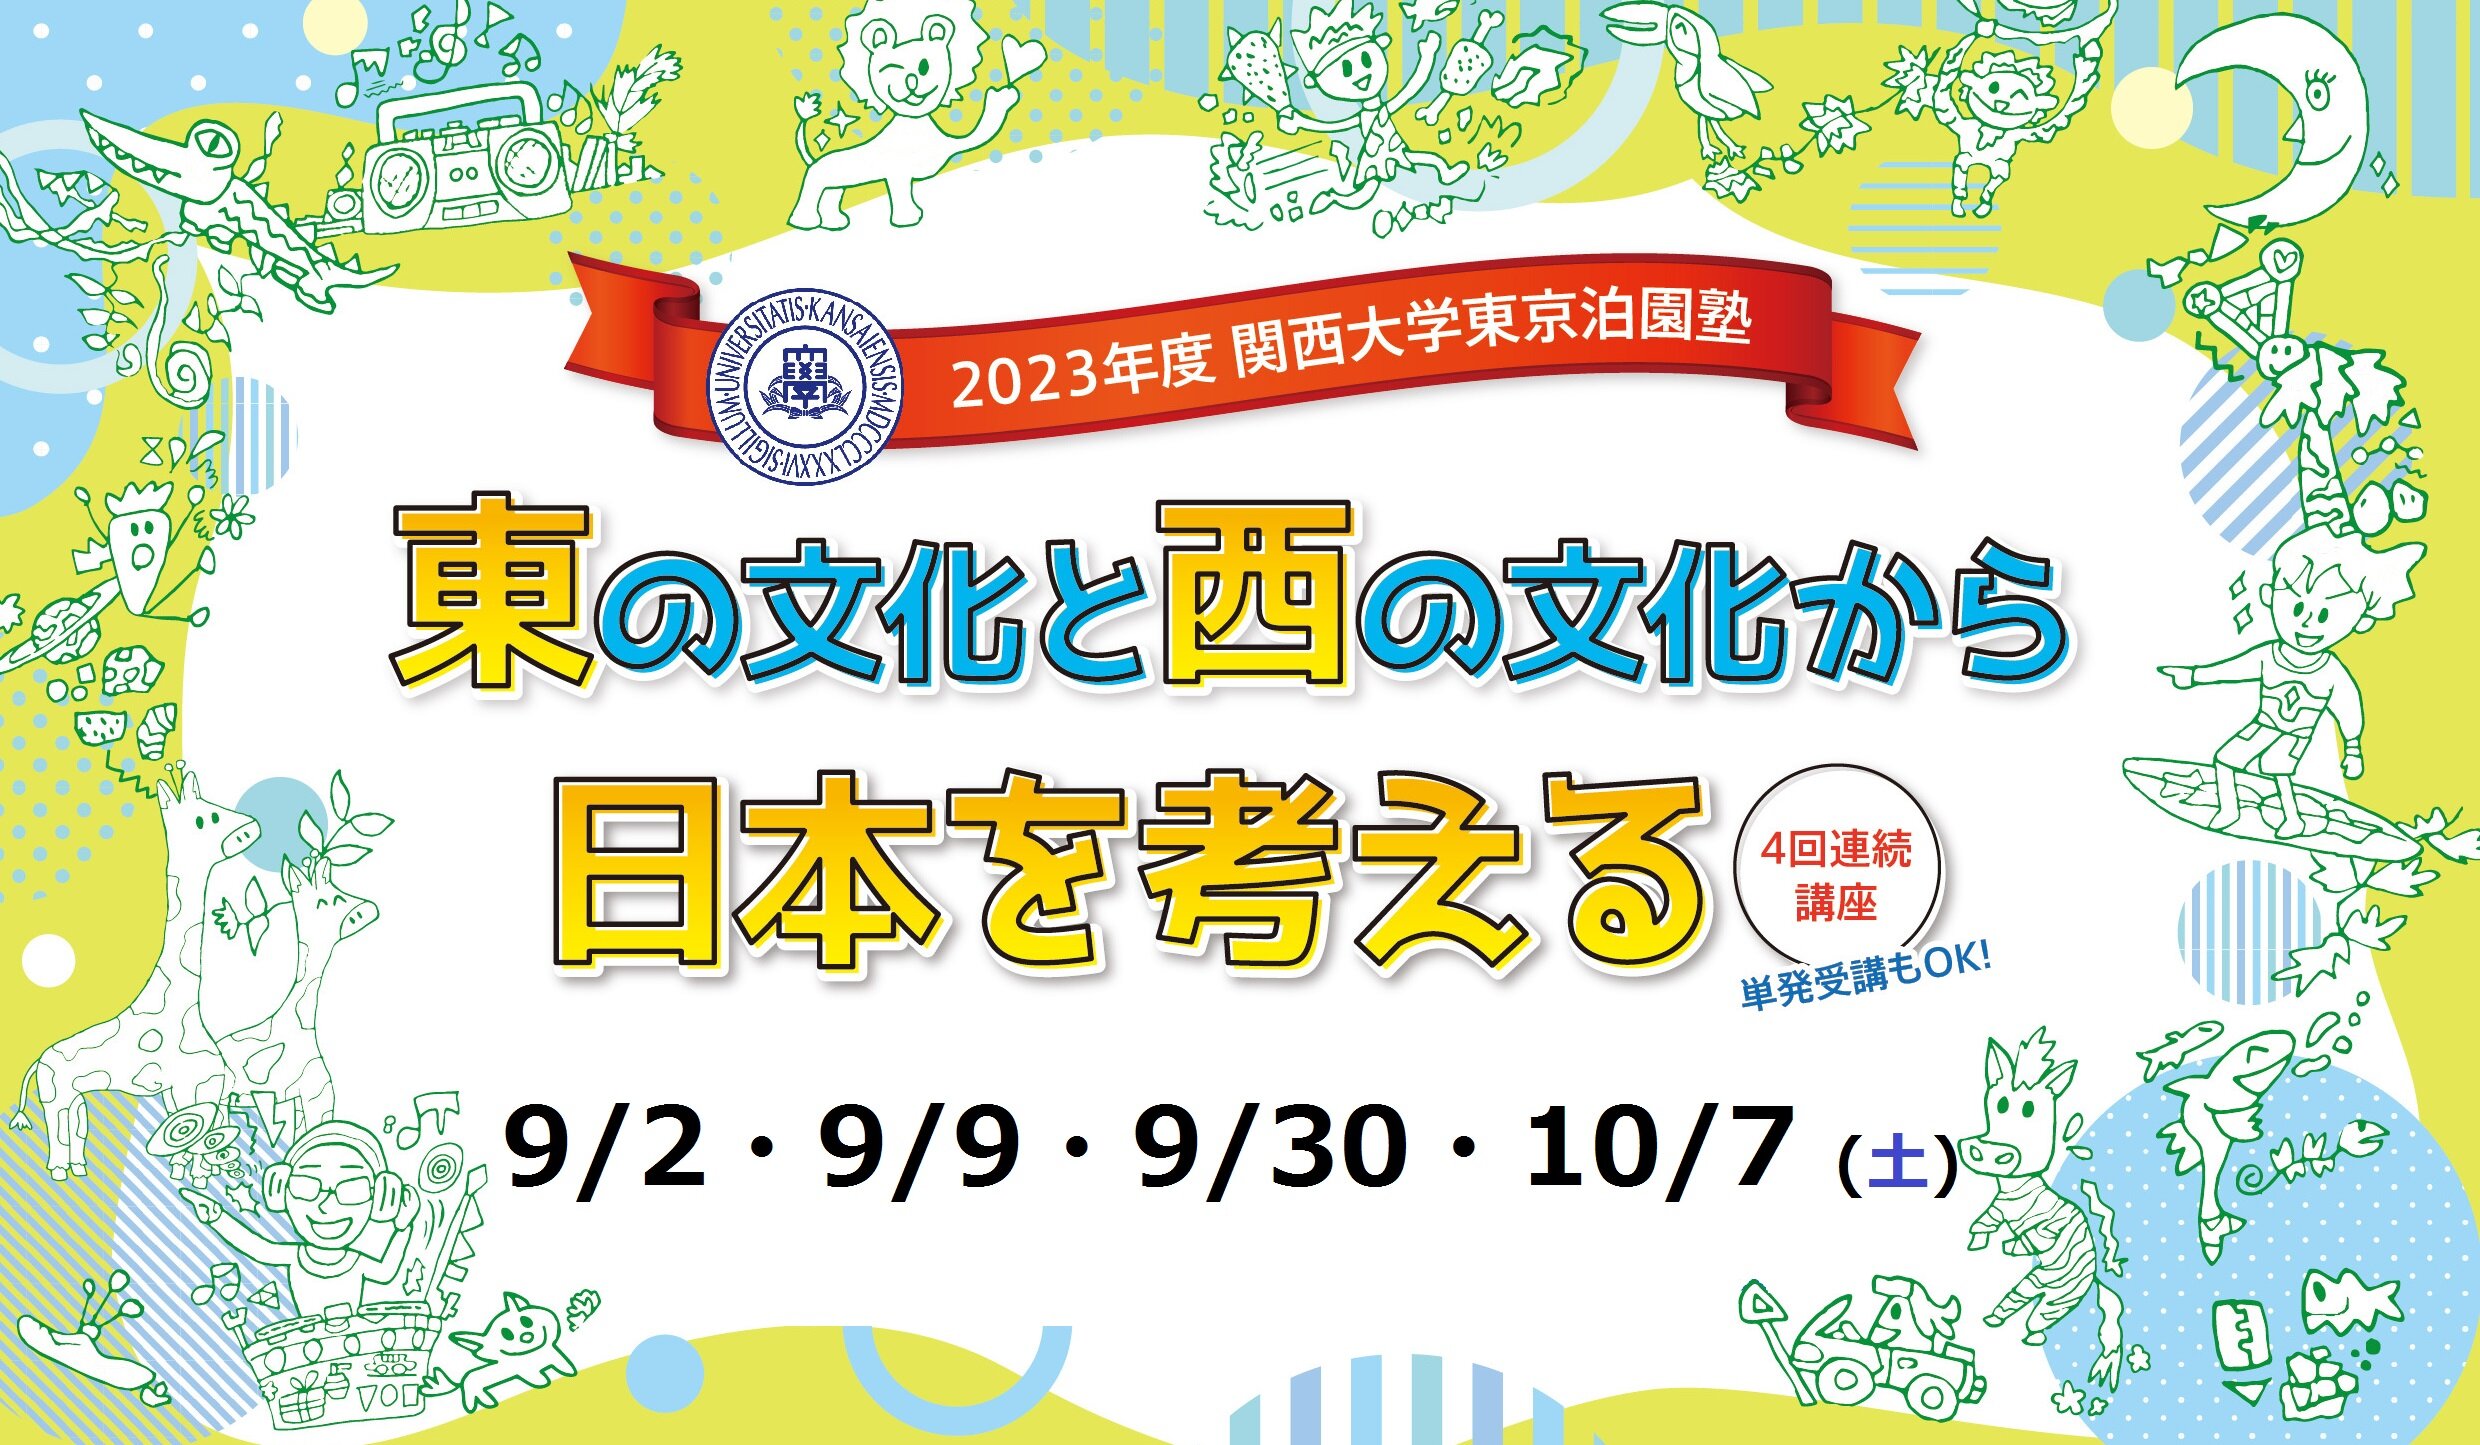 9月・10月 「2023年度 関西大学東京泊園塾」を開催します